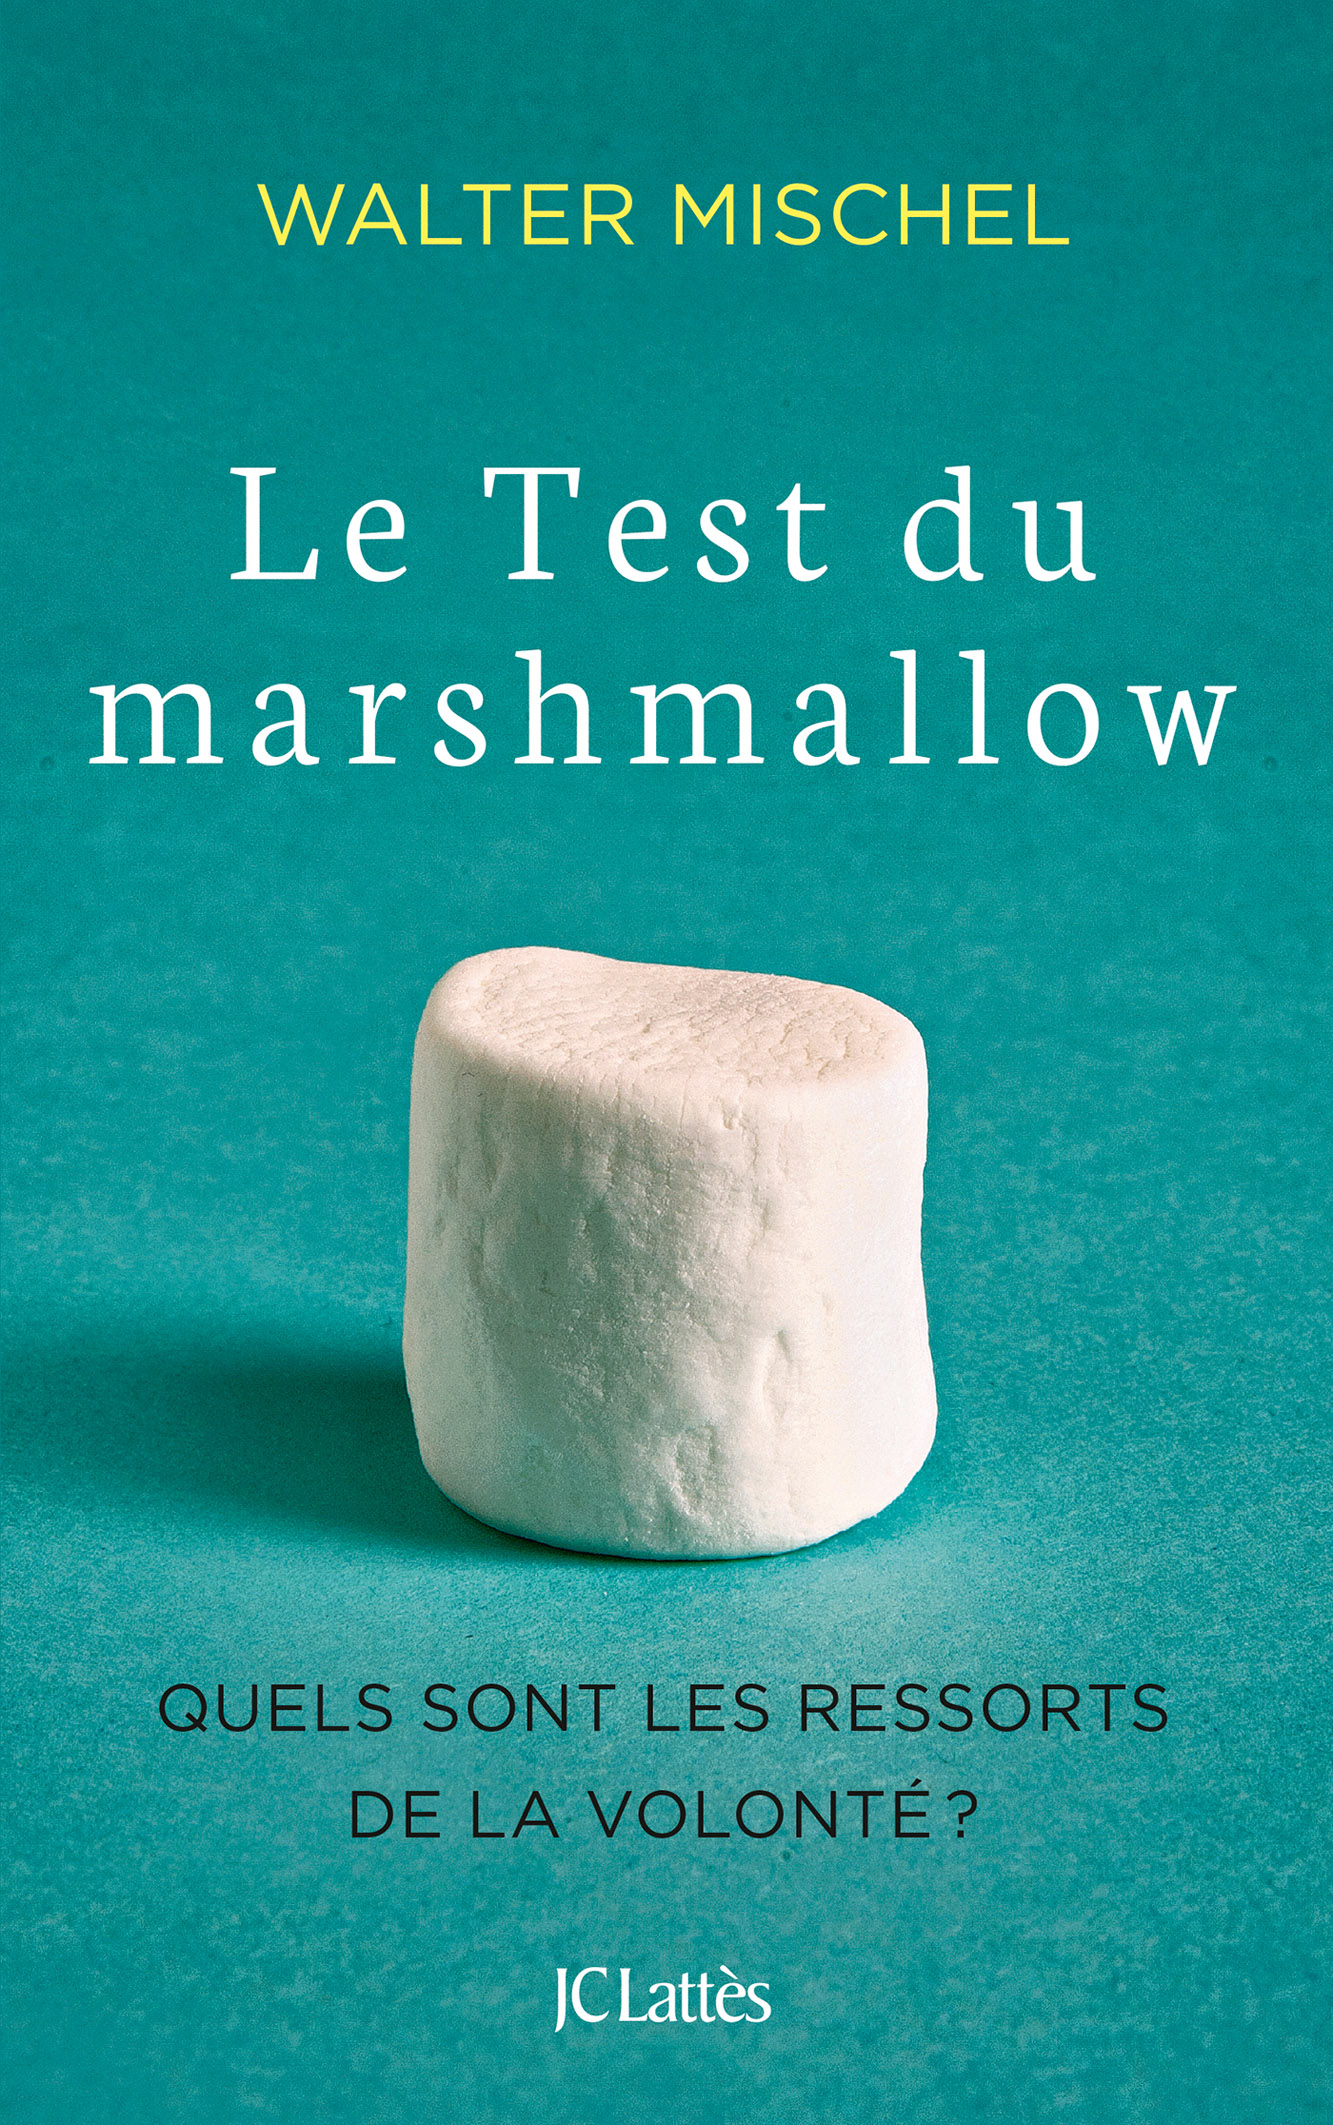 Le test du marshmallow par Walter Mischel - Enseigner la frustration aux enfants - Isabelle Filliozat